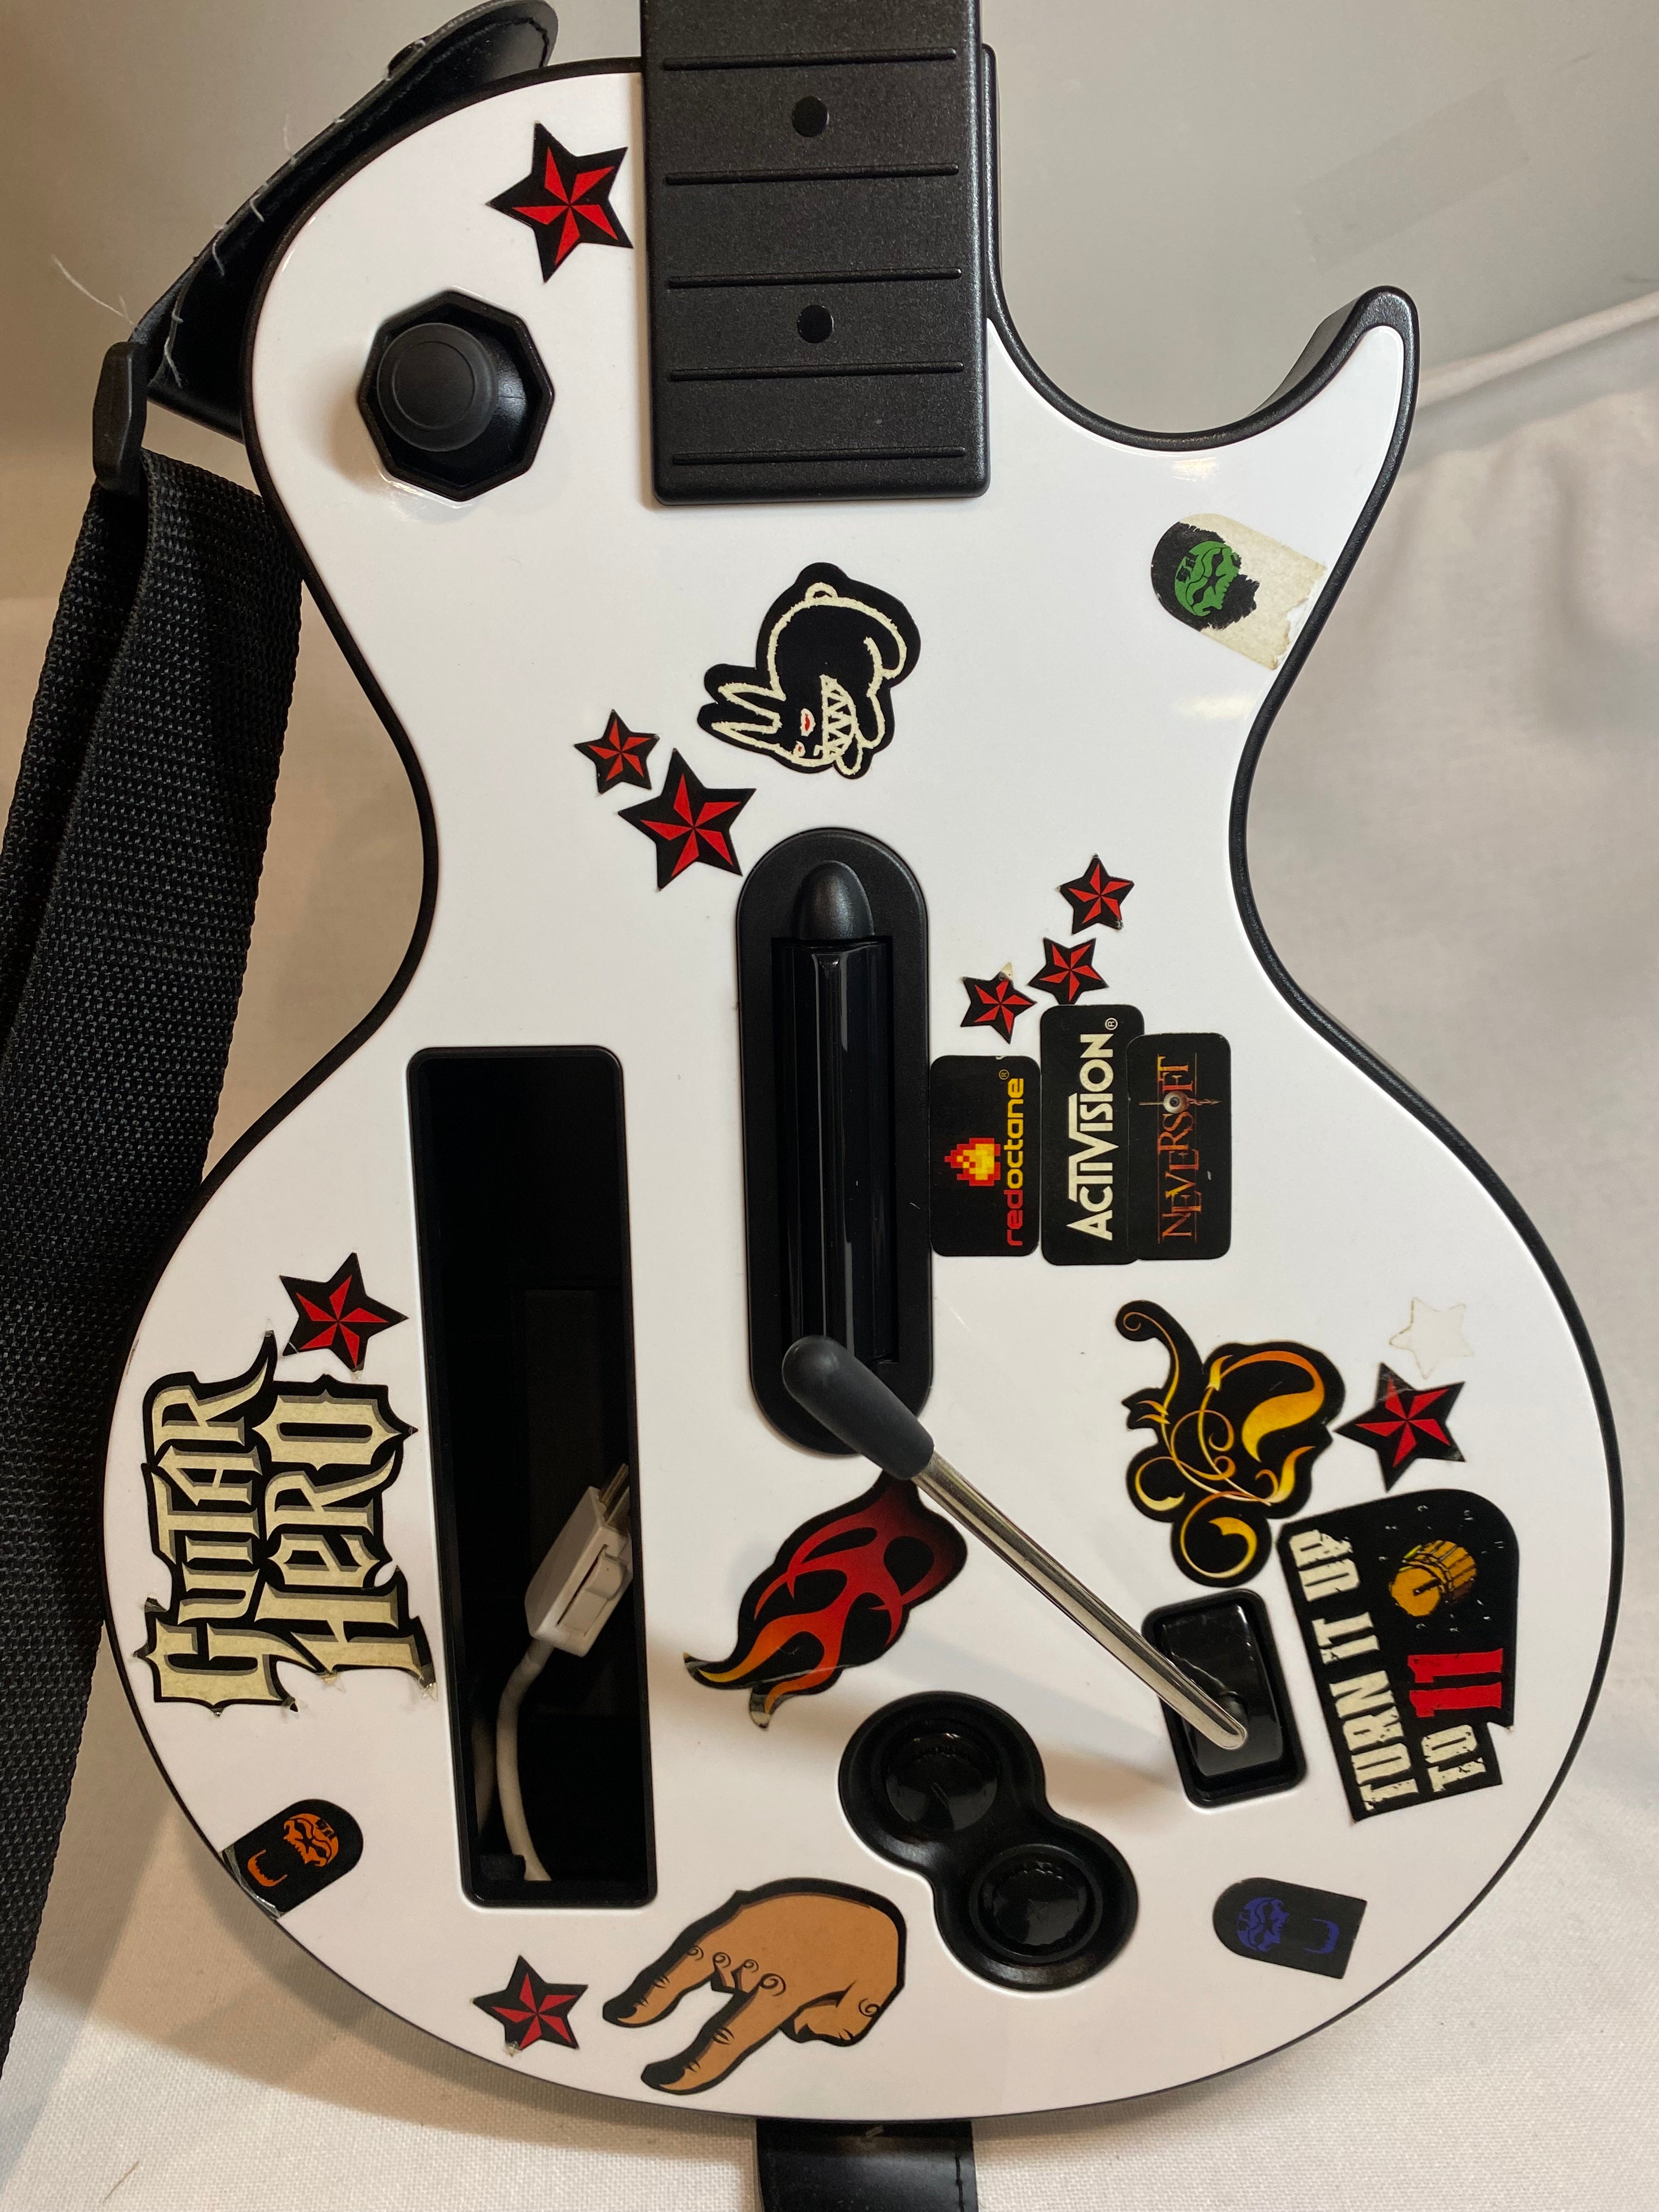 Controller | Nintendo Wii | Gibson White Guitar Hero Guitar